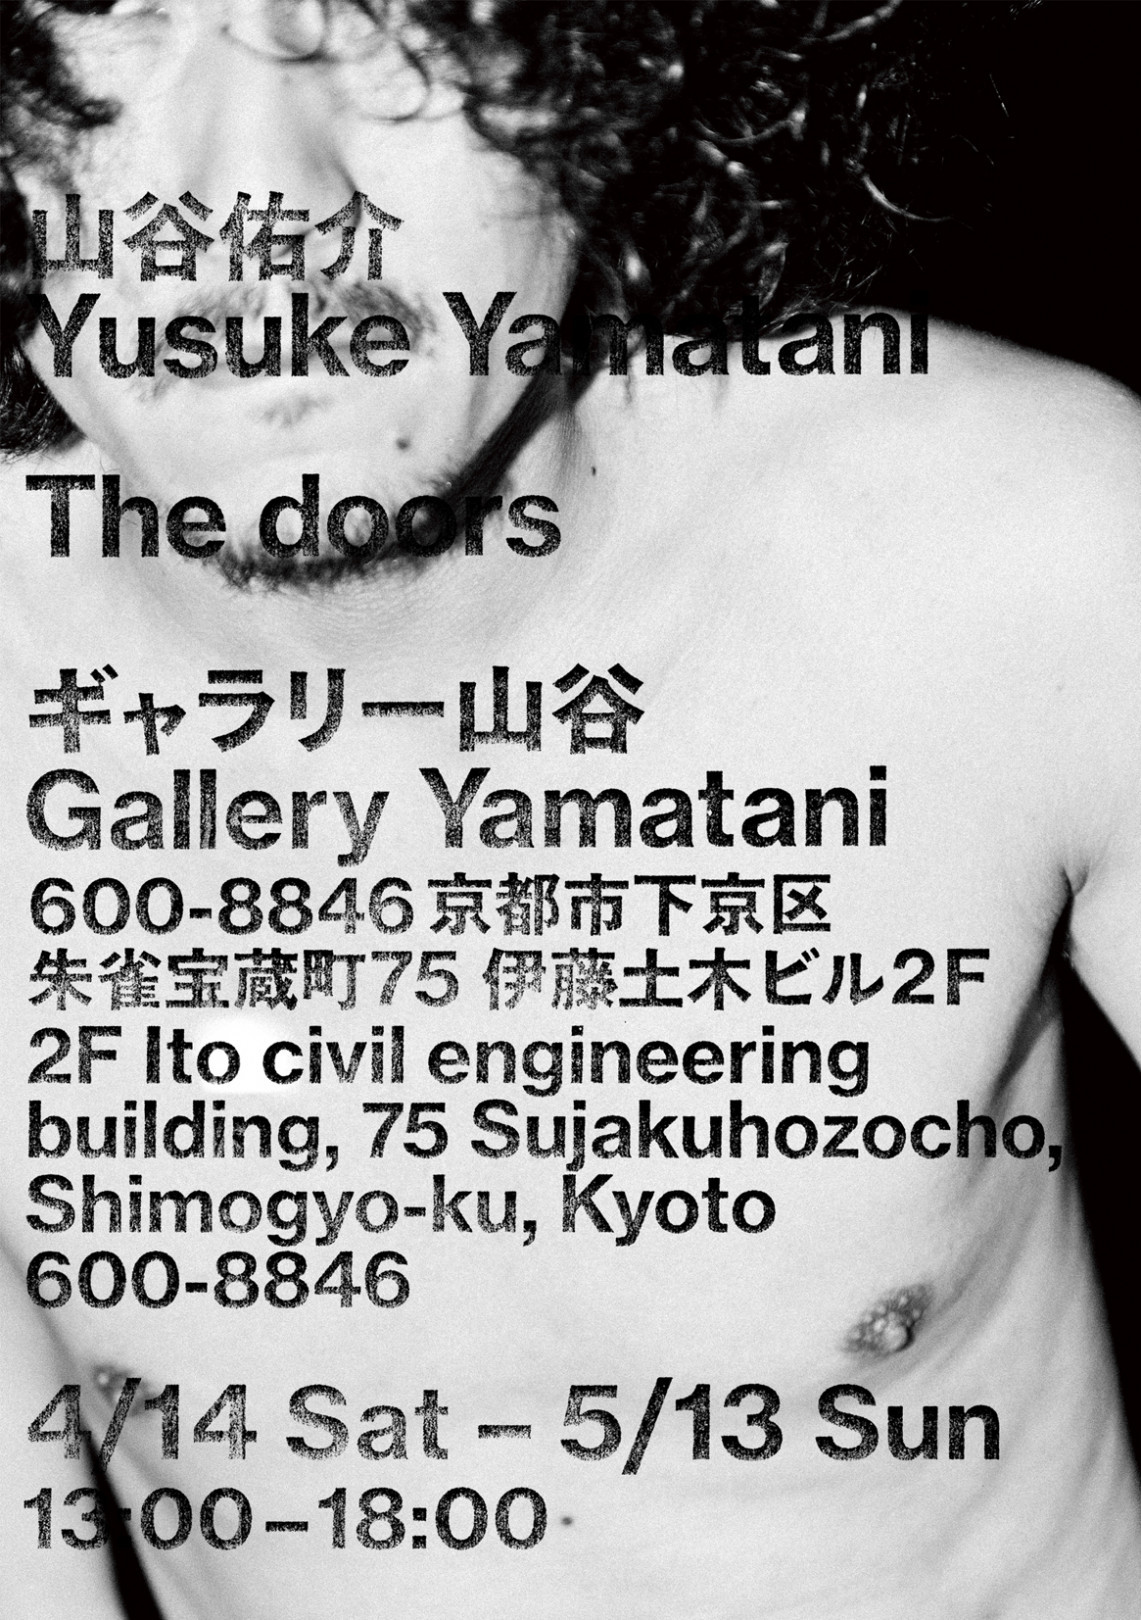 「The doors」山谷佑介（Yusuke Yamatani）